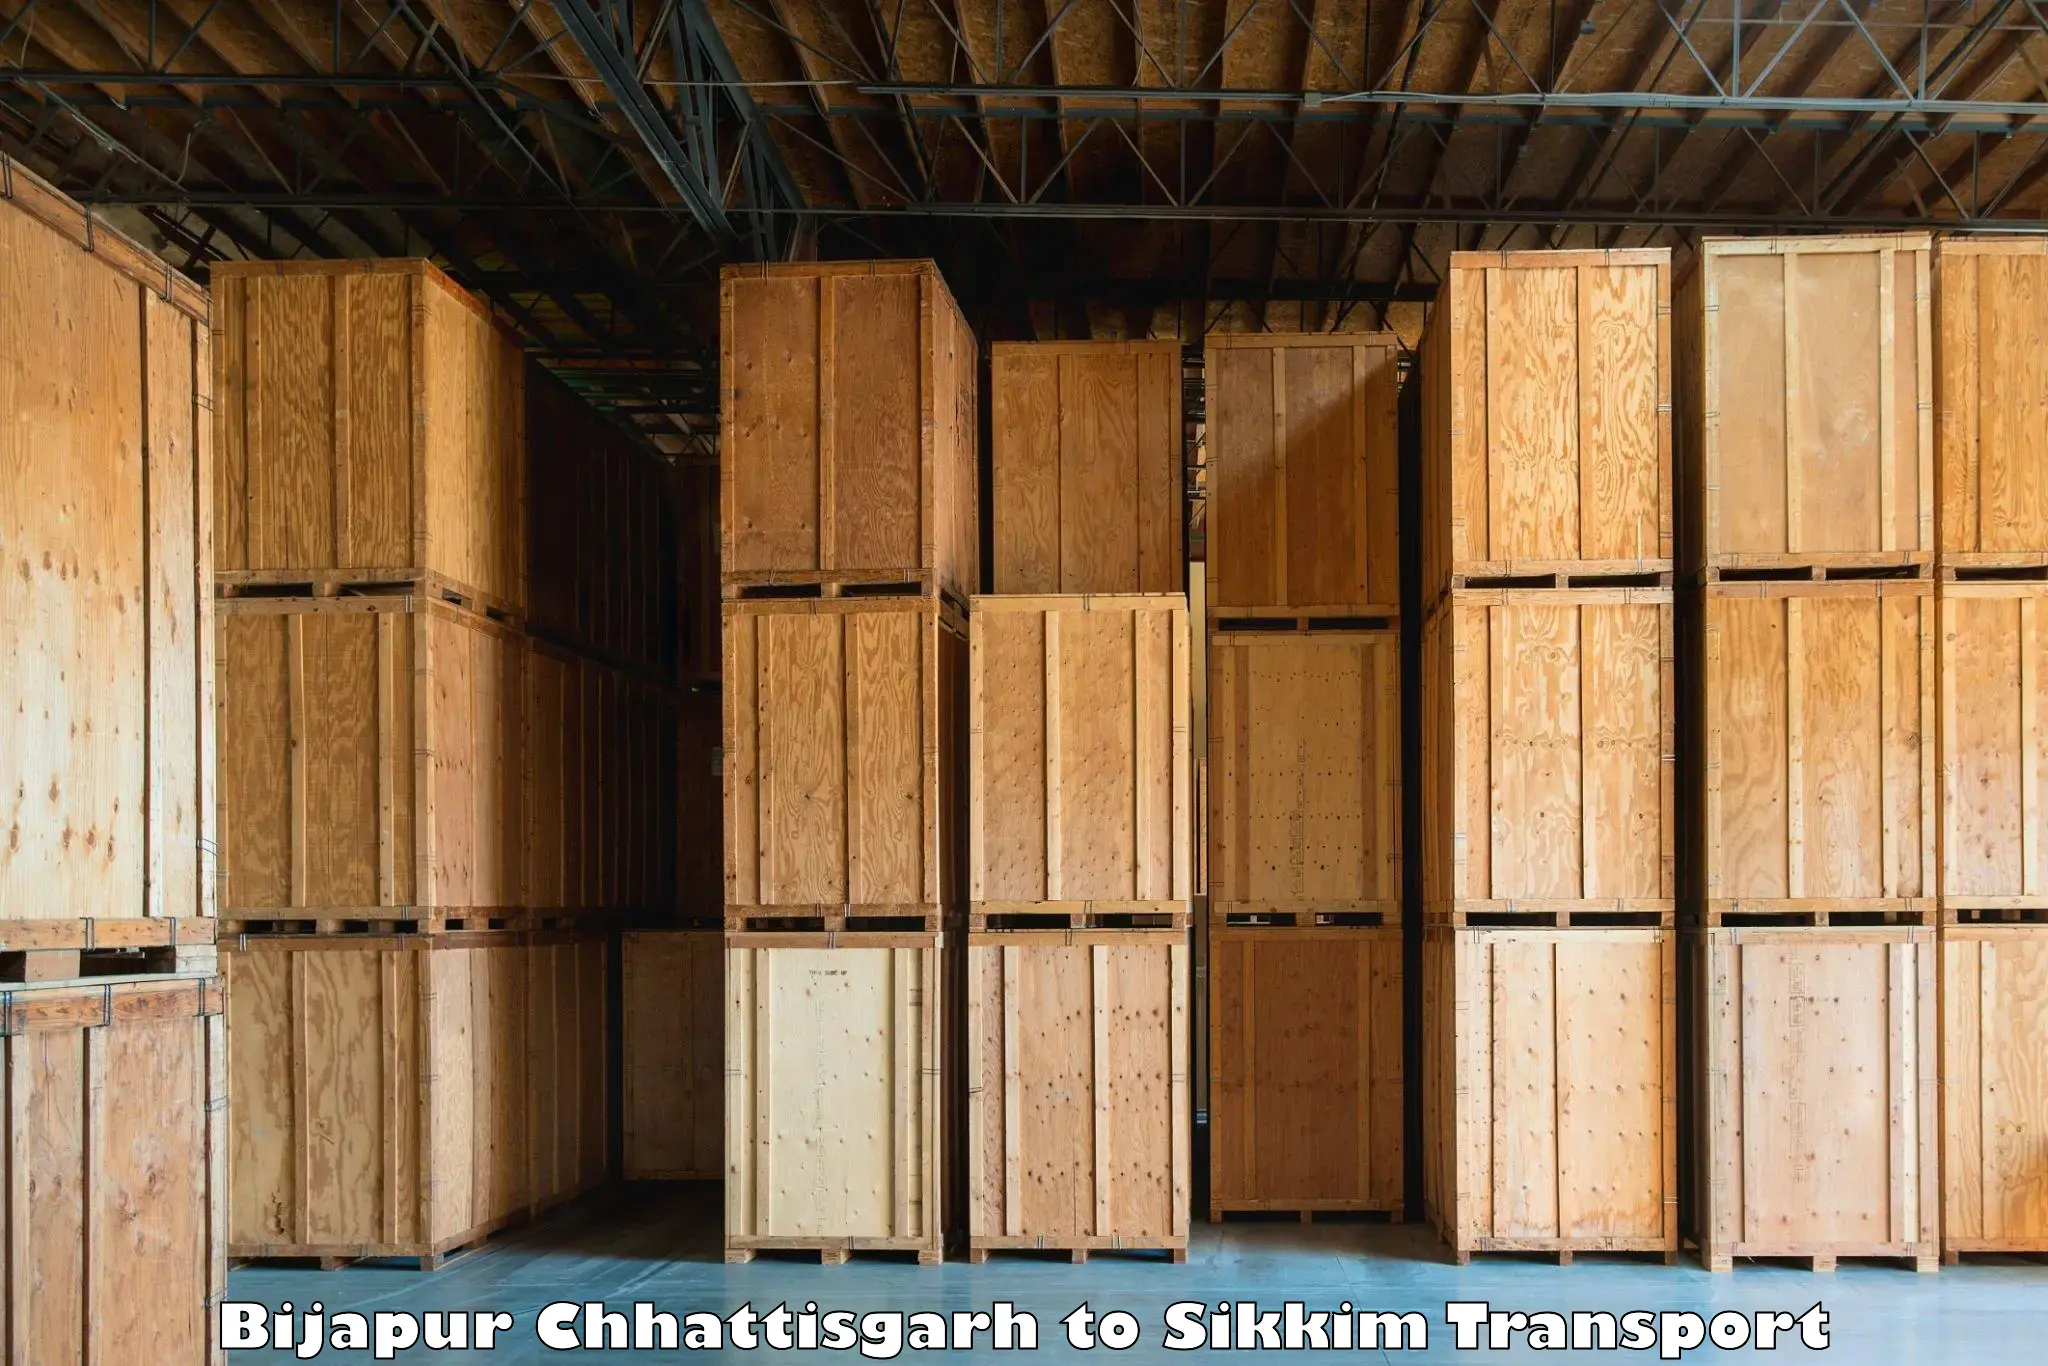 Cargo train transport services Bijapur Chhattisgarh to North Sikkim